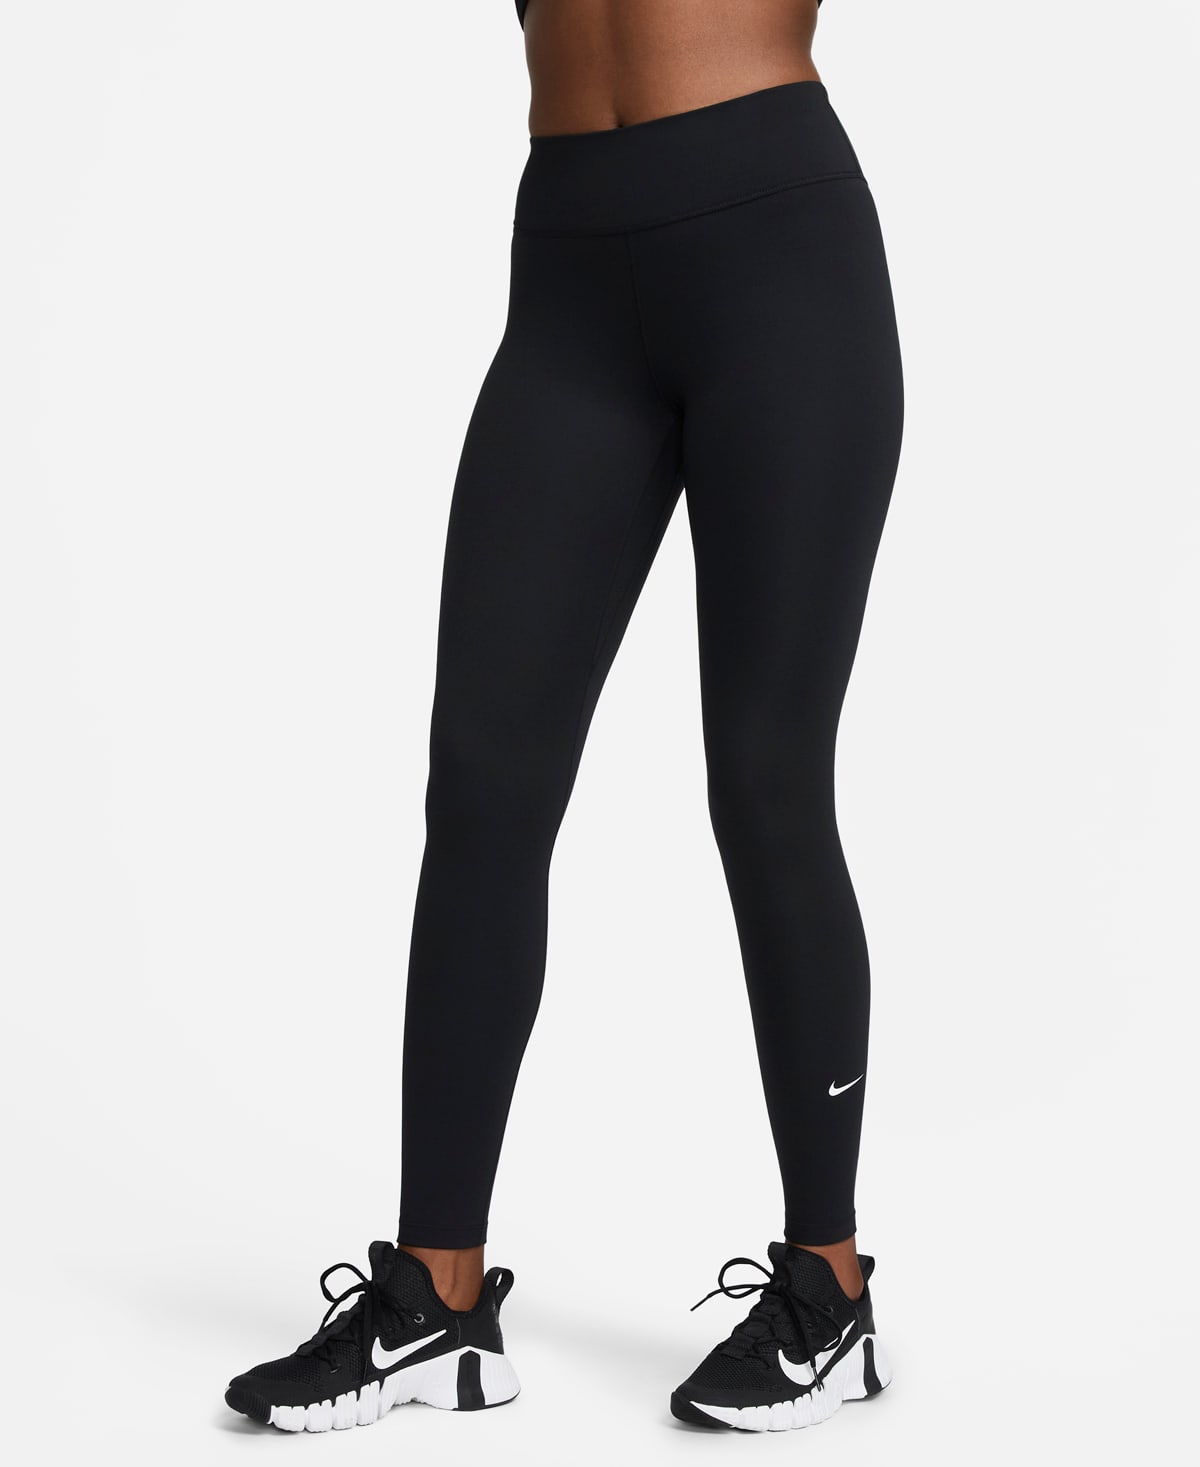 Tabla de leggings para mujer. Nike